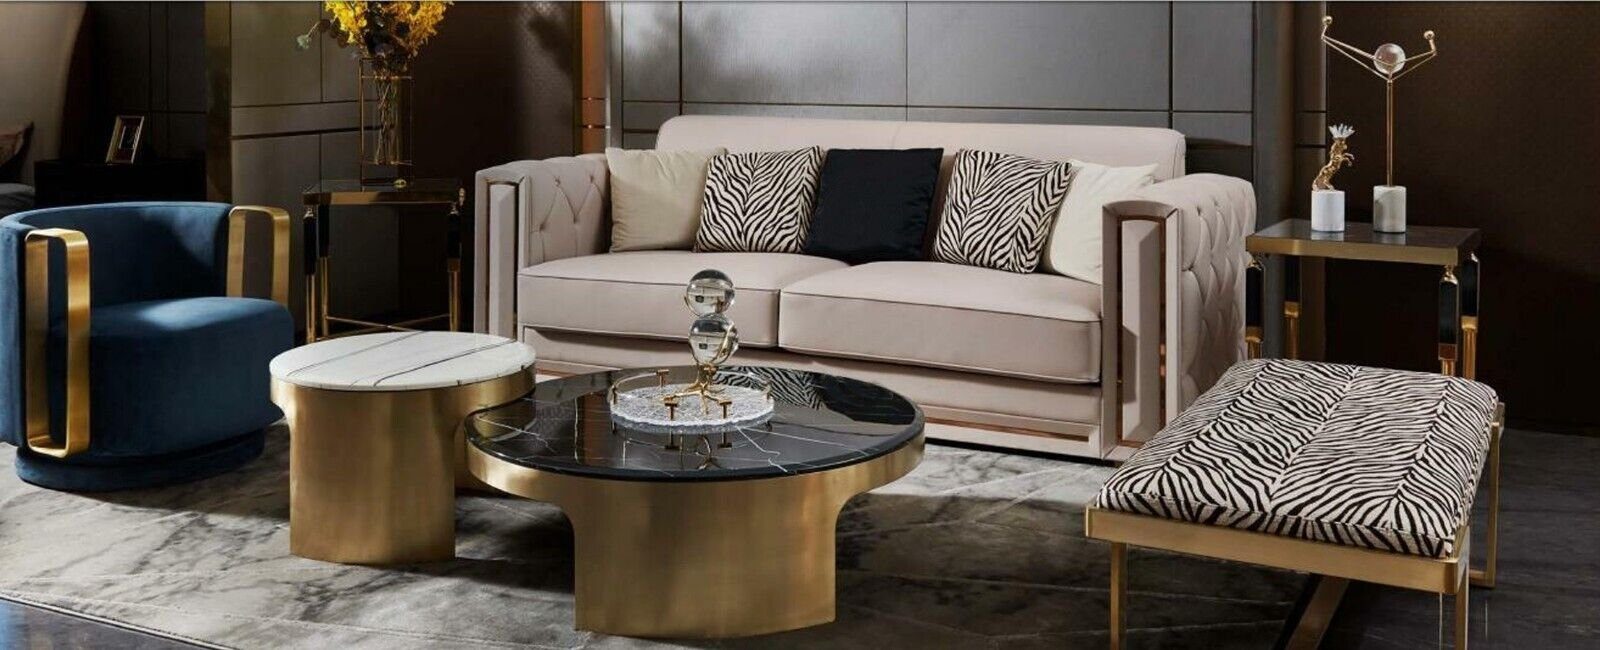 Modern In Möbel, Couchtisch Doppelter Europe Tisch JVmoebel Luxus Made Wohnzimmer Couchtisch